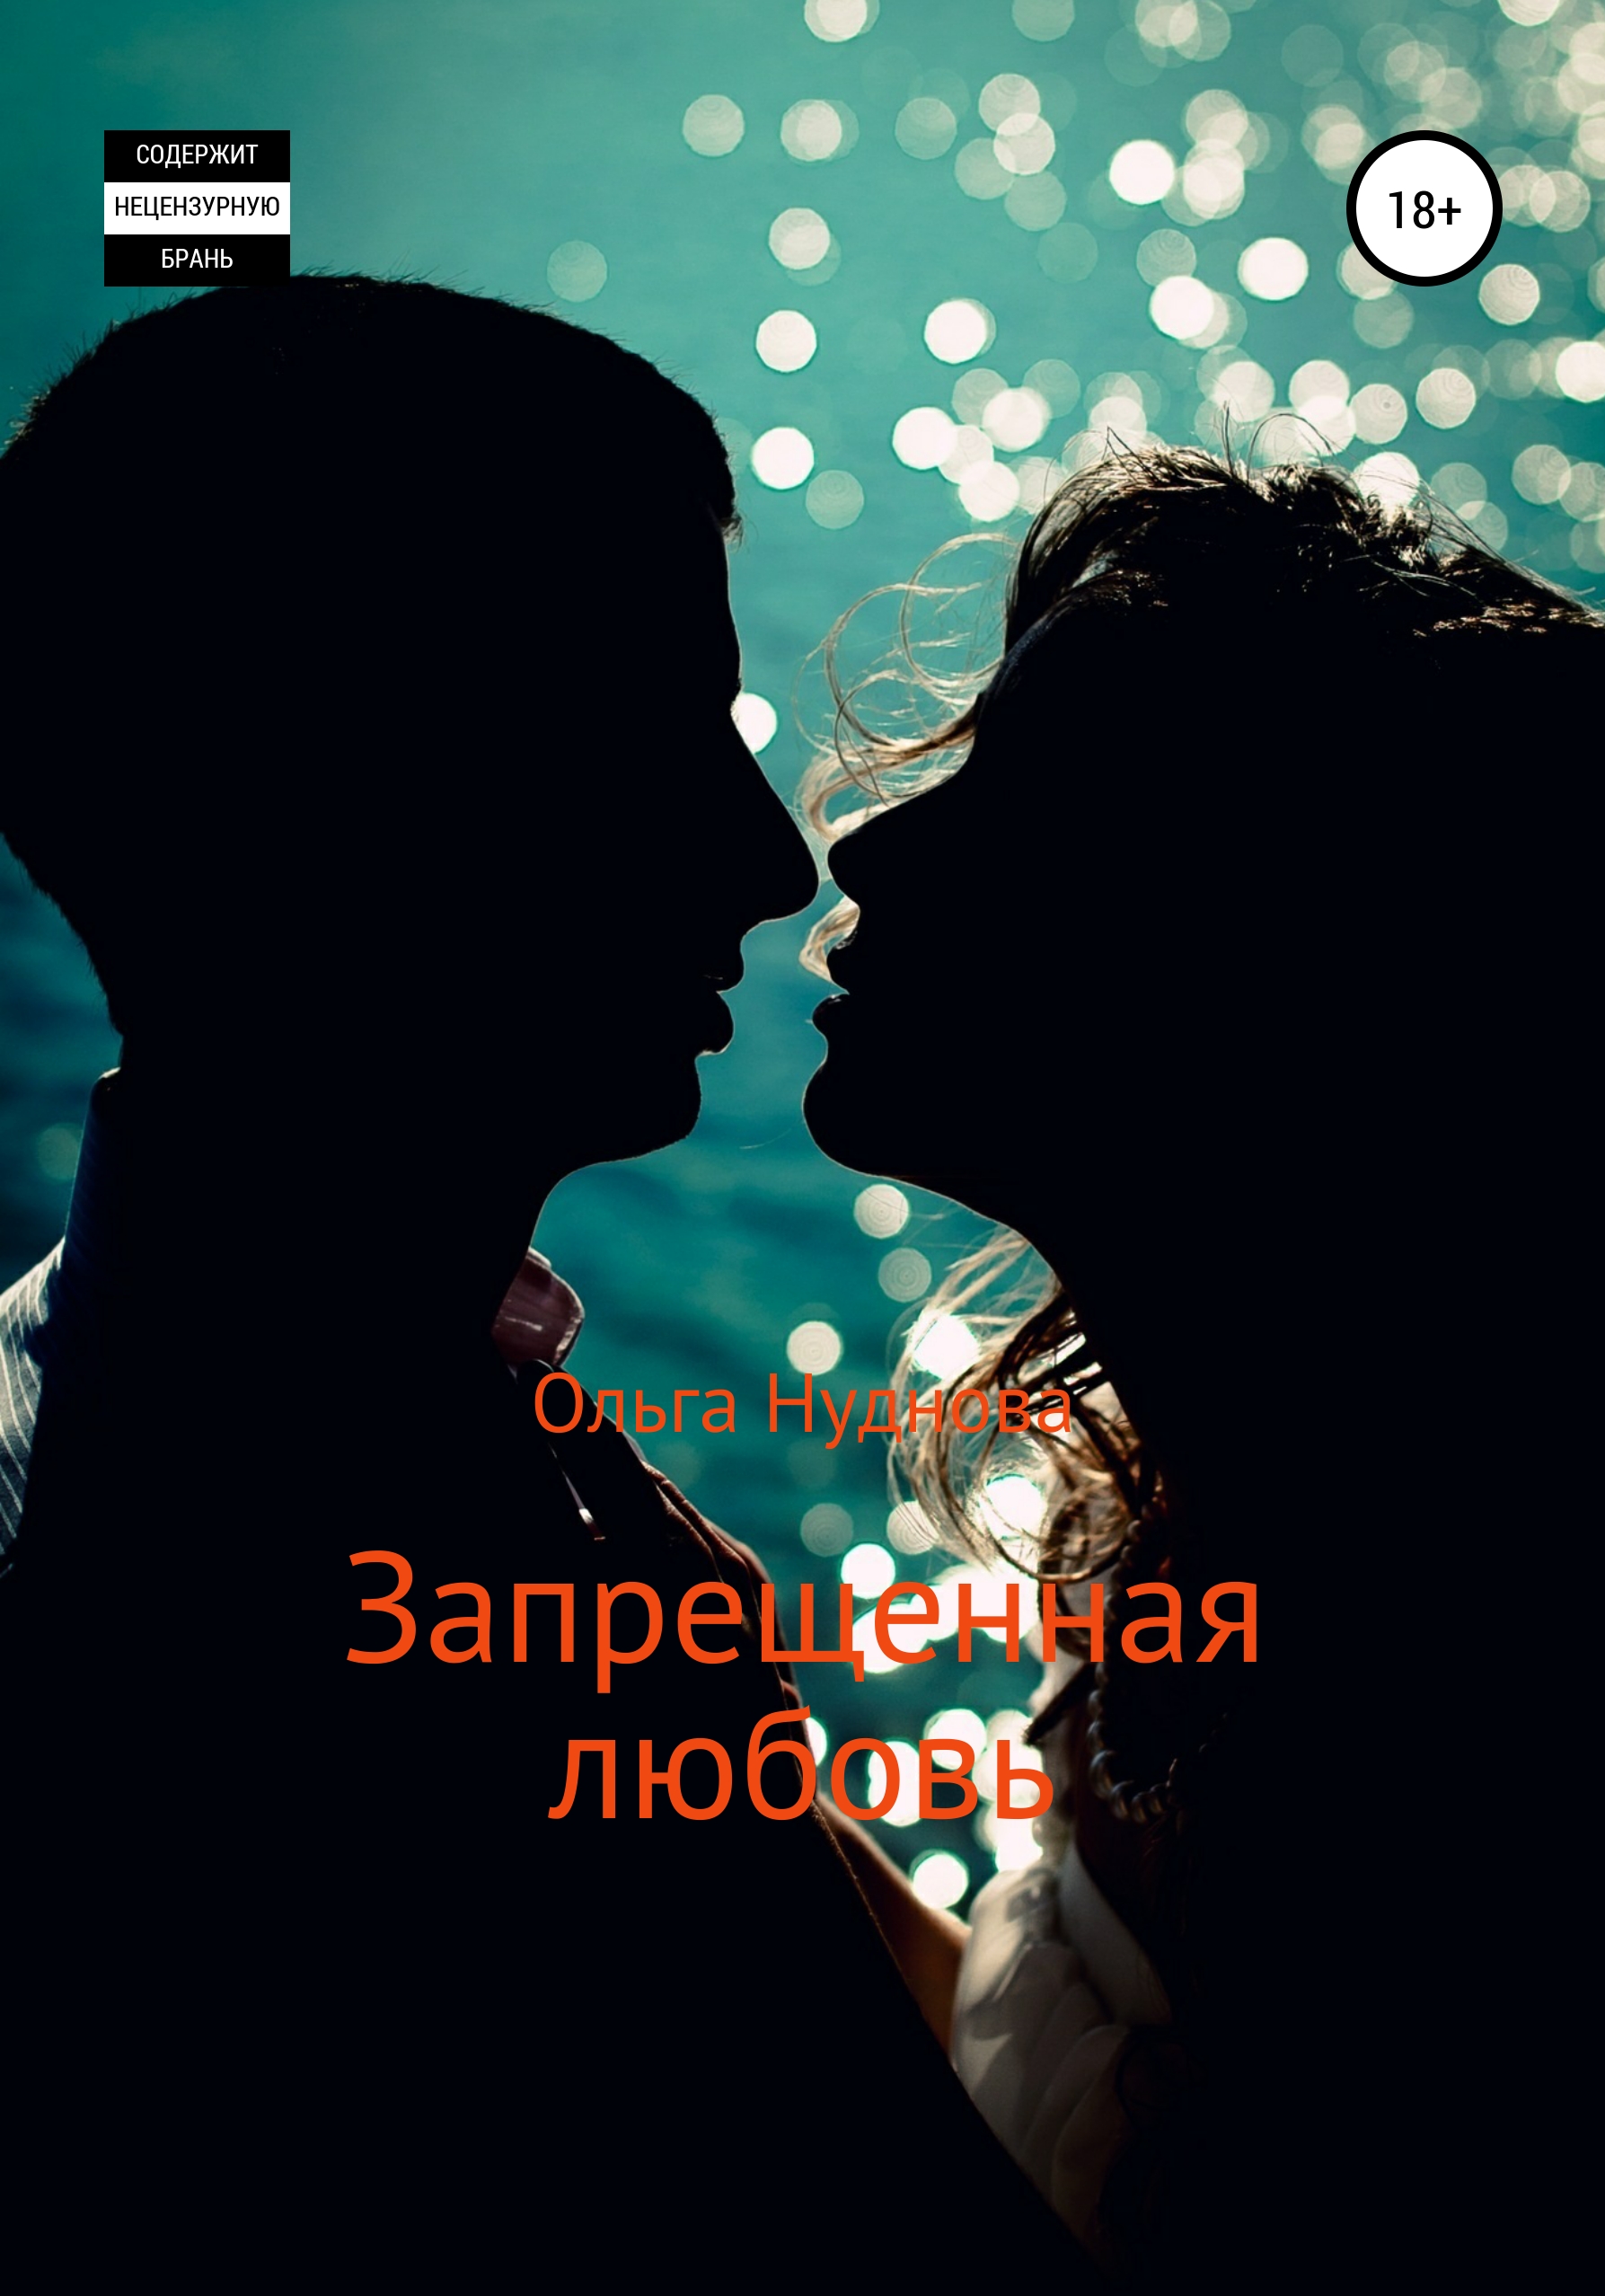 Woman kiss man. Мужчина и женщина любовь. Два влюбленных человека. Поцелуй. Поцелуй мужчины и женщины.